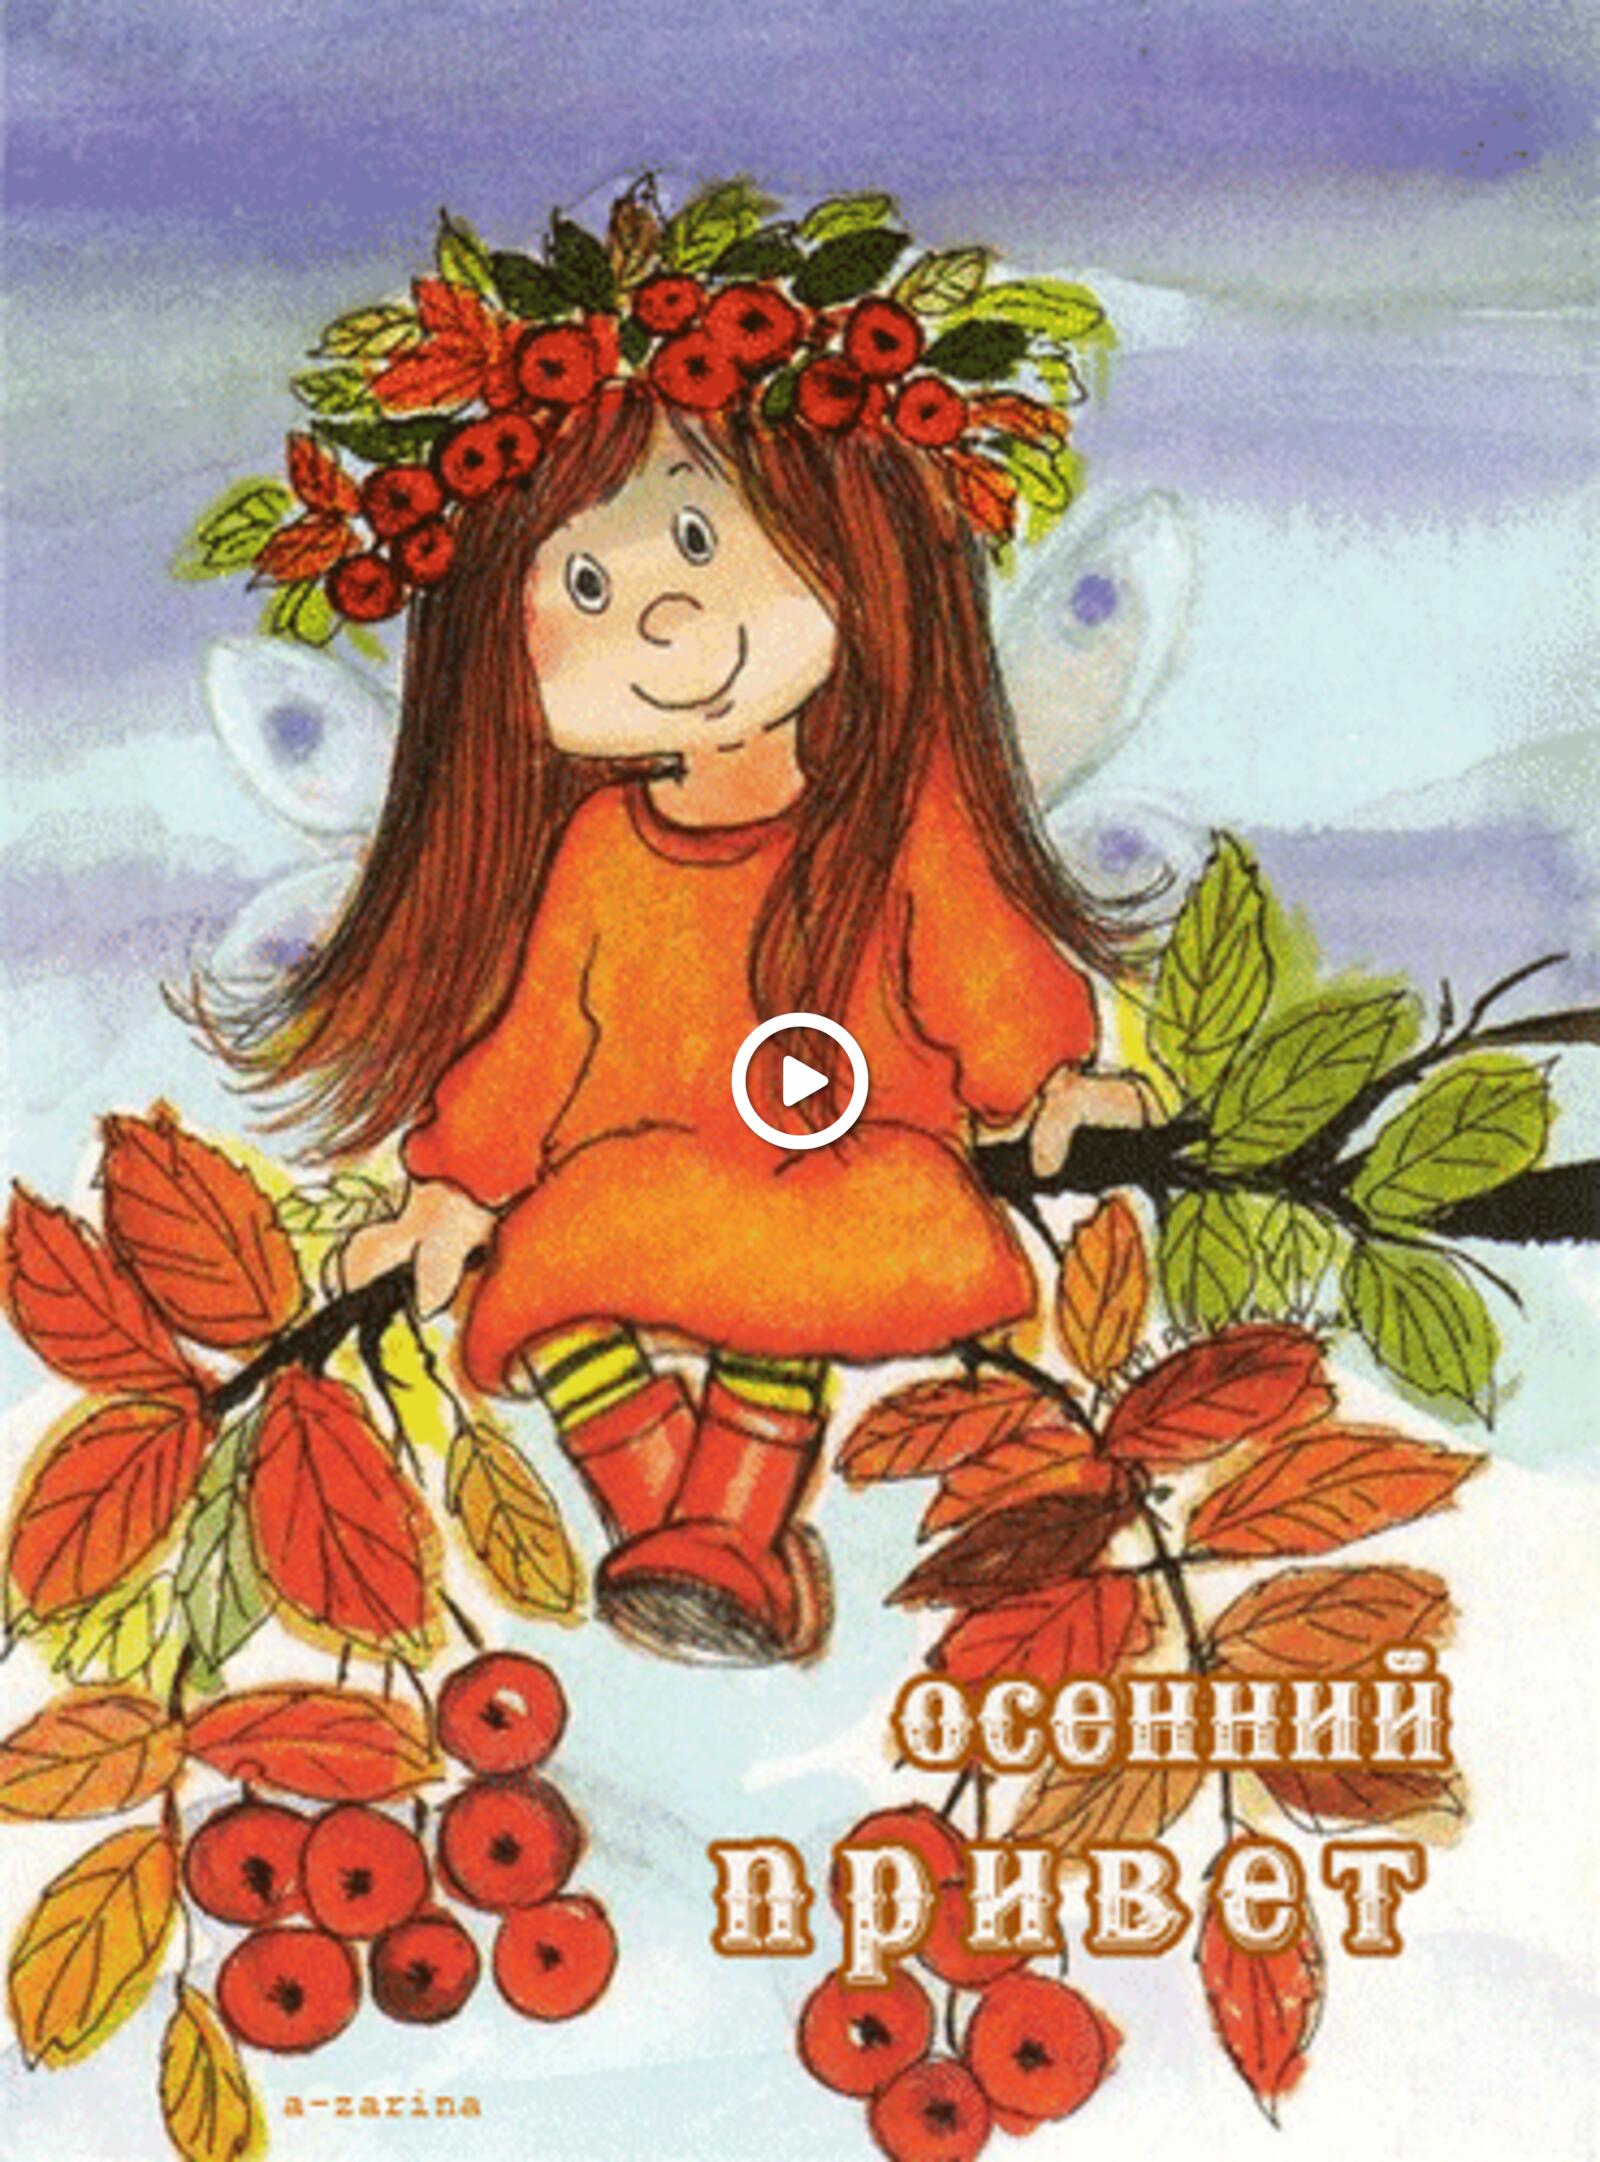 一张以动画 秋季 花楸为主题的明信片